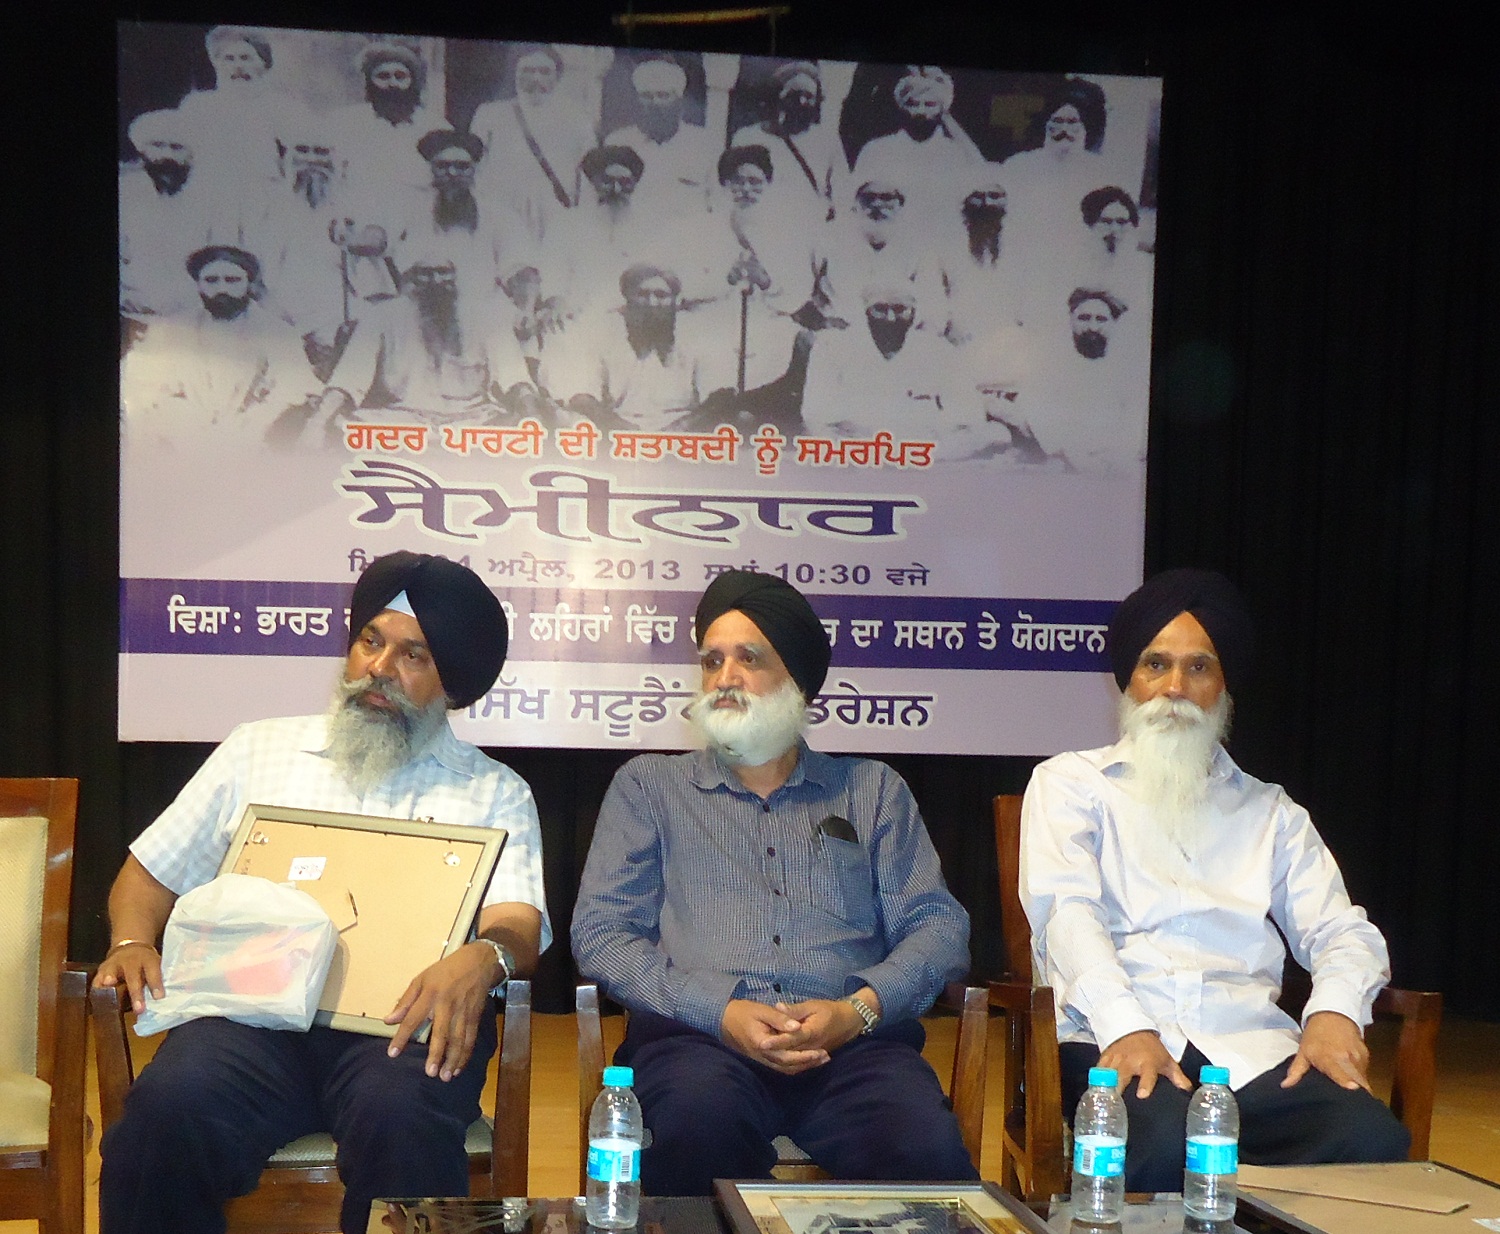 (L to R) S. Rajwinder Singh Rahi, Dr. Darshan Singh Tatla, S. Ajmer Singh during a Seminar on Gadhar Movement at Kalaa Bhawan, Punjabi University, Patiala on April 04, 2013